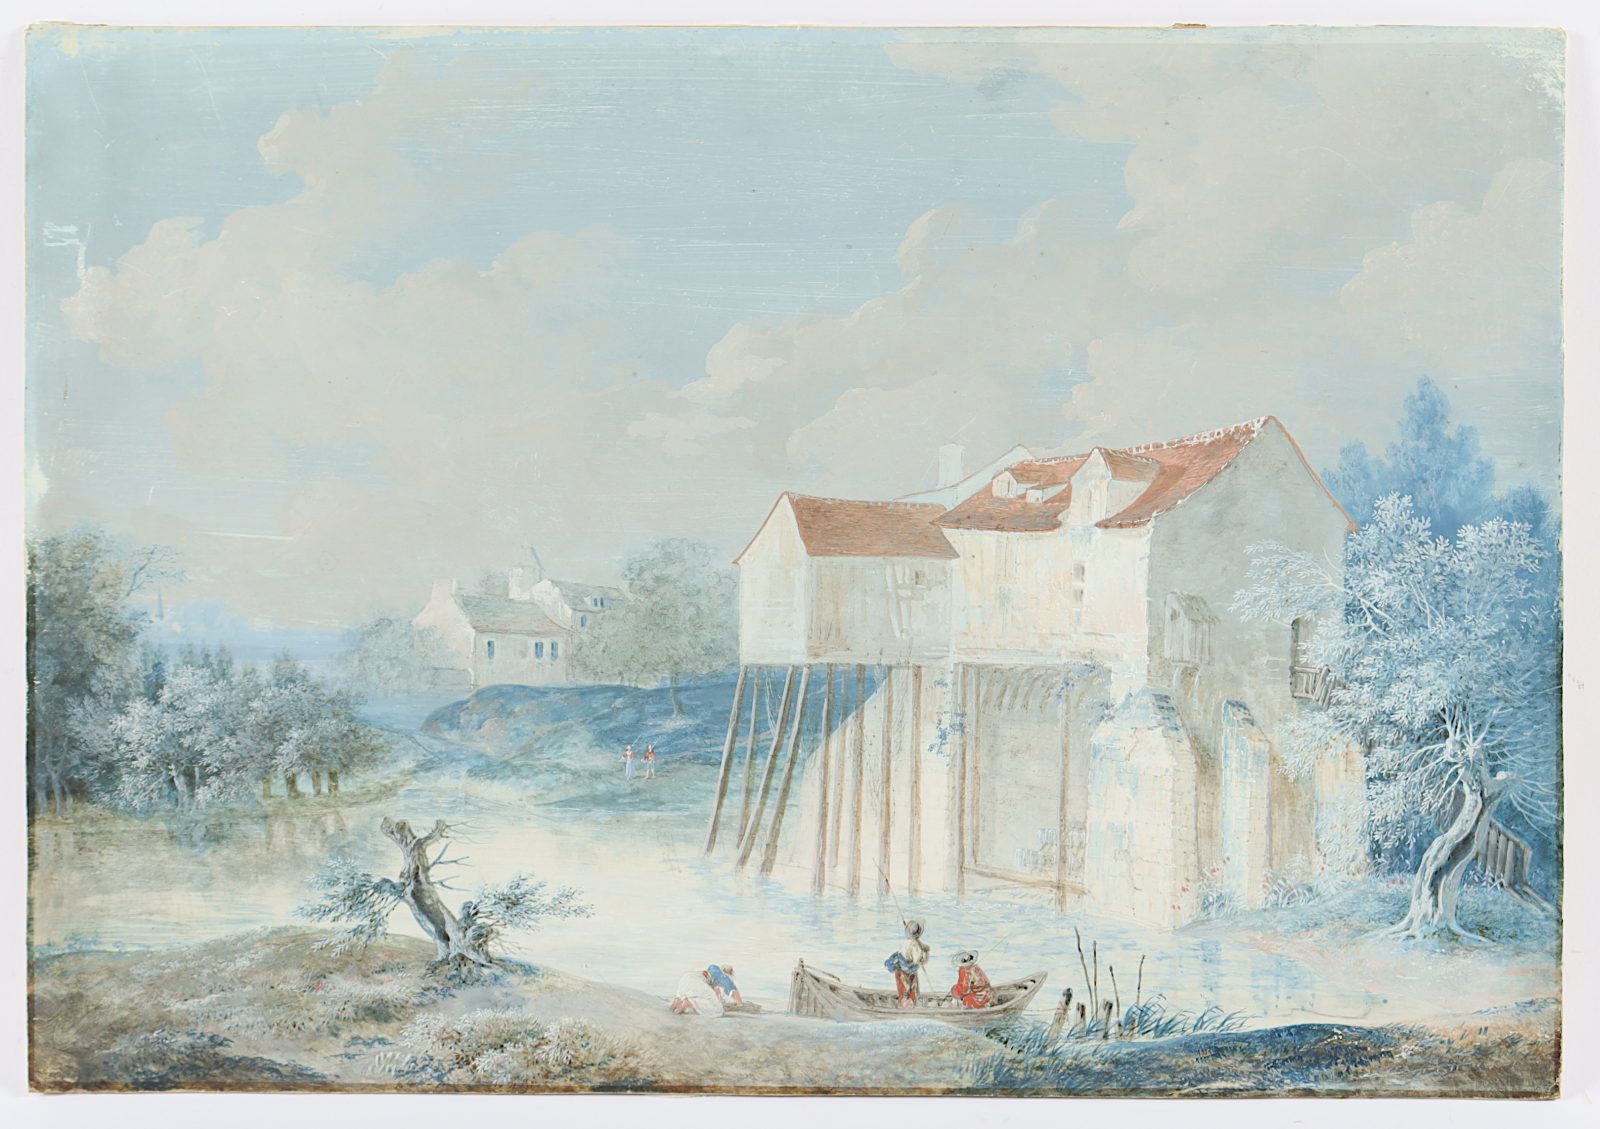 FRANKREICH UM 1800, "Landschaft mit Wassermühle" - Image 2 of 3